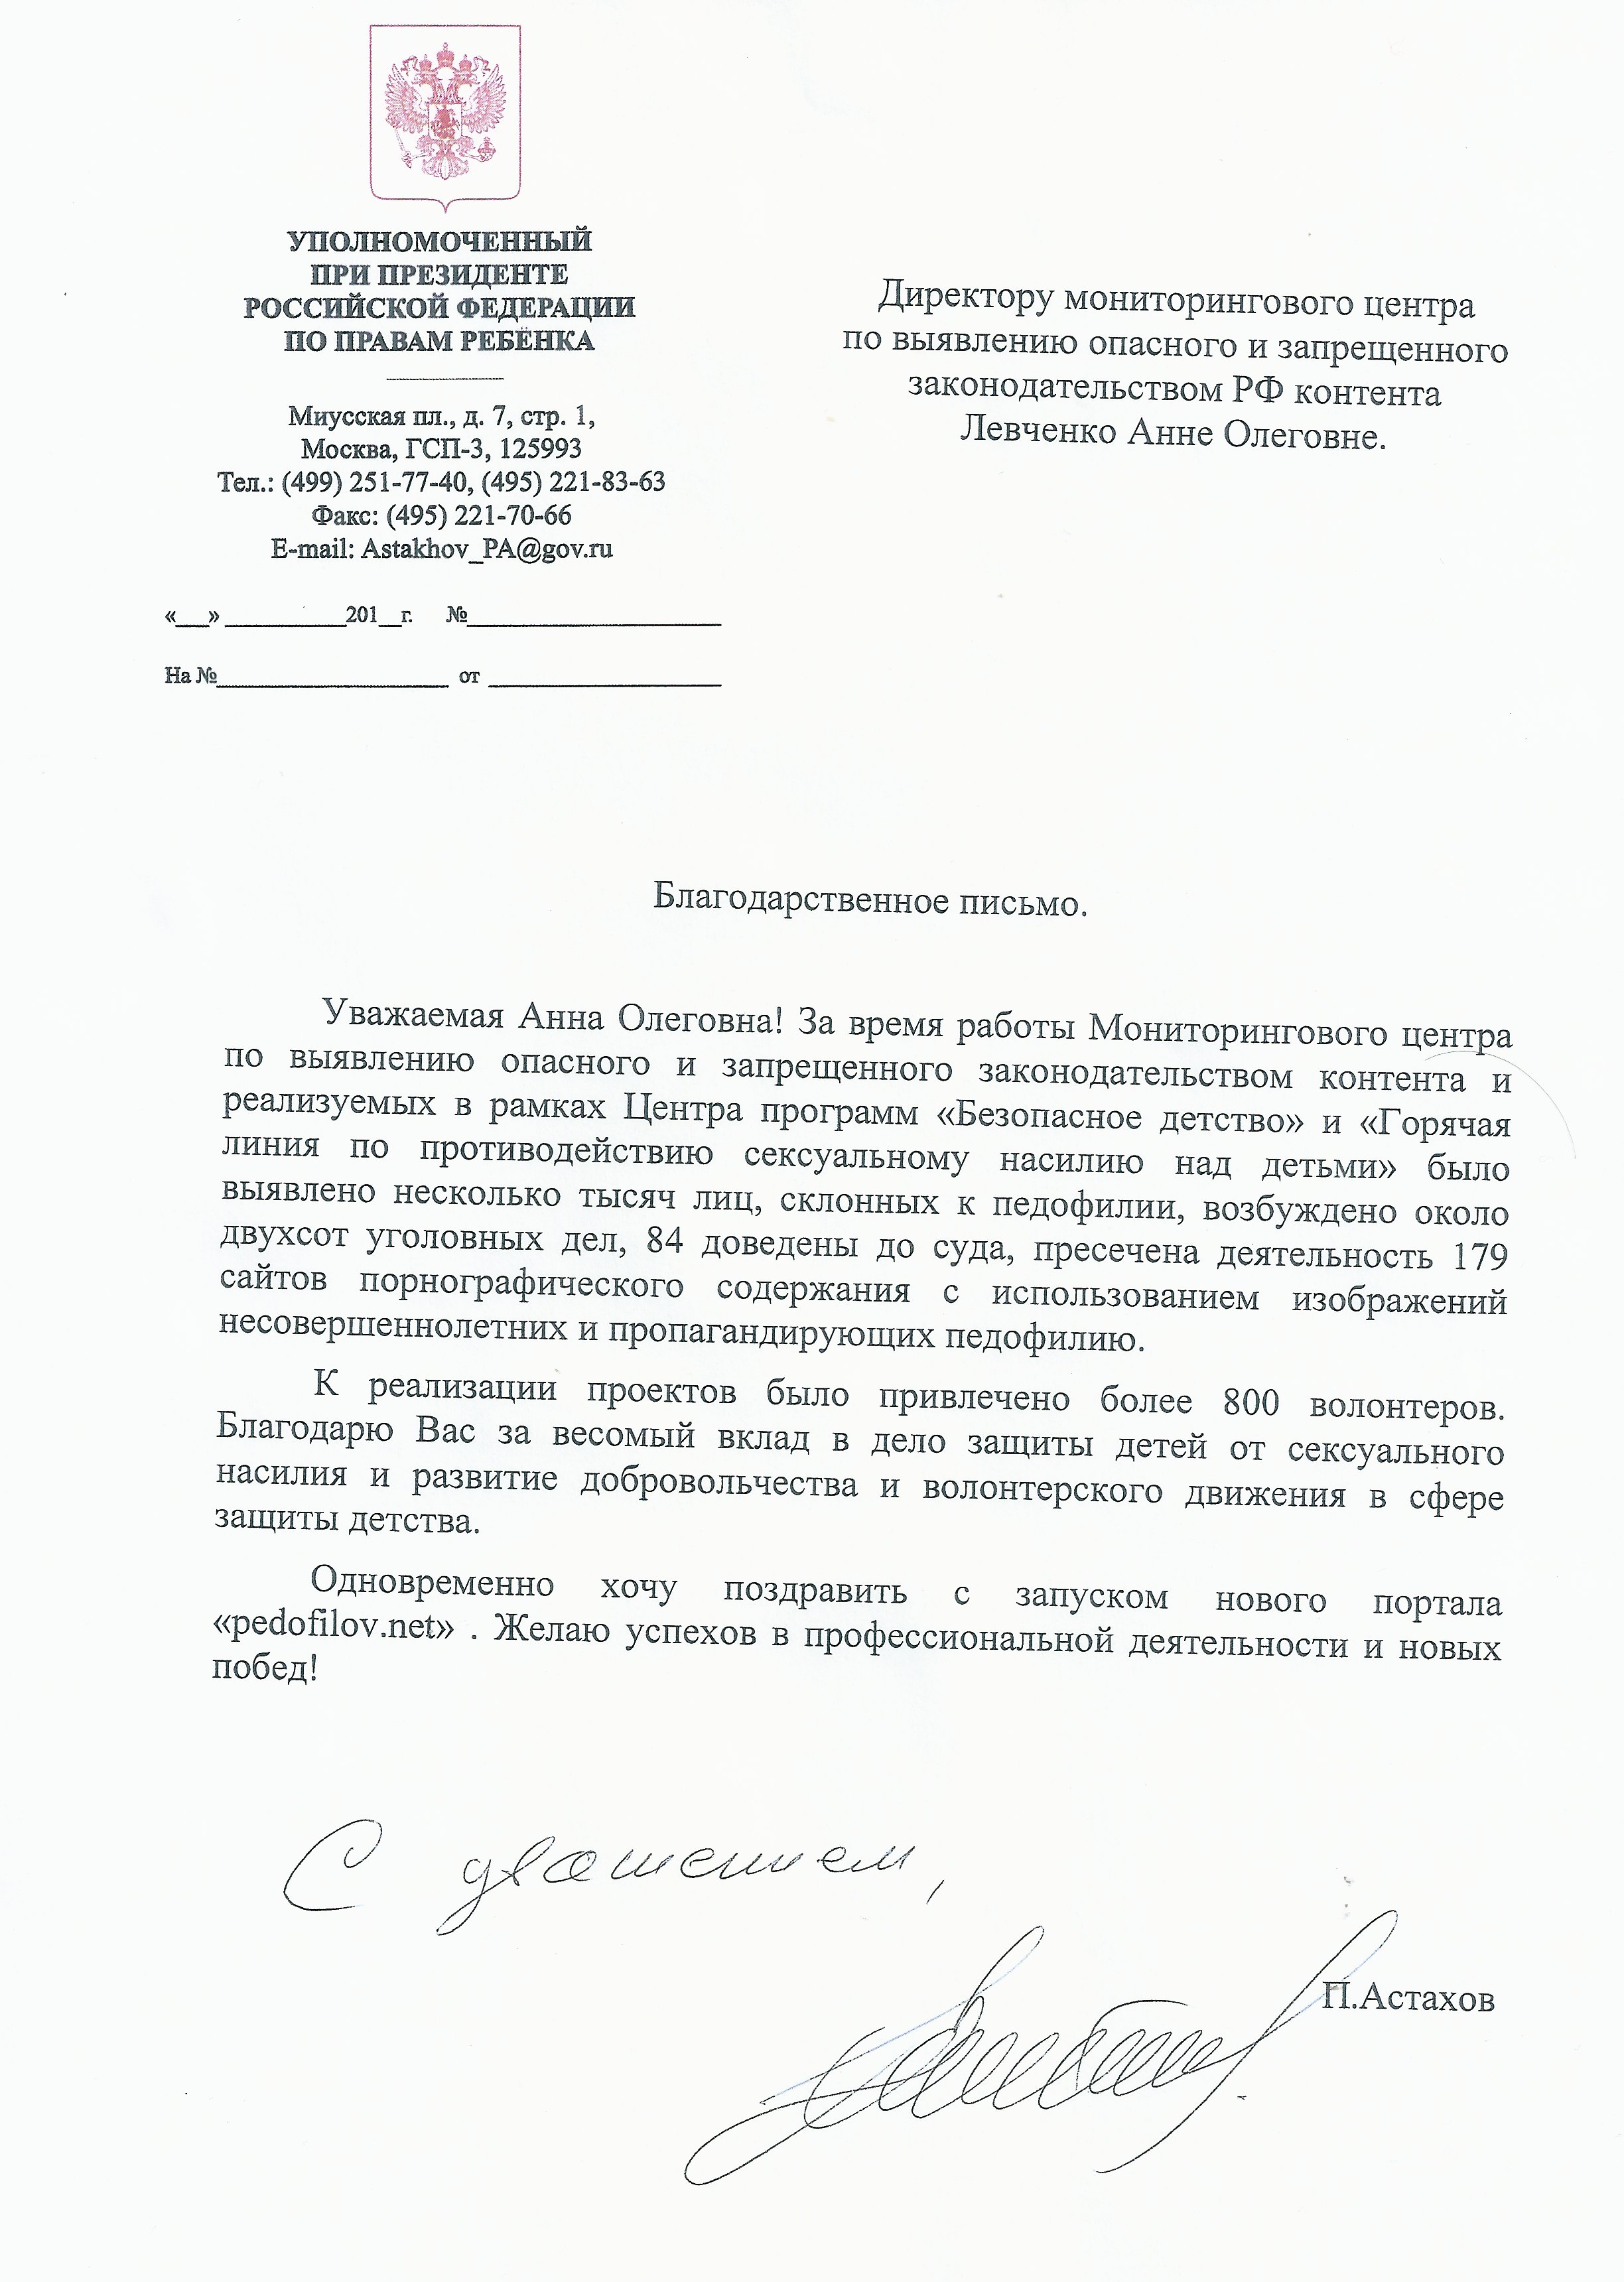 Павел Астахов направил Анне Левченко благодарственное письмо и высоко оценил работу "Мониторингового центра".